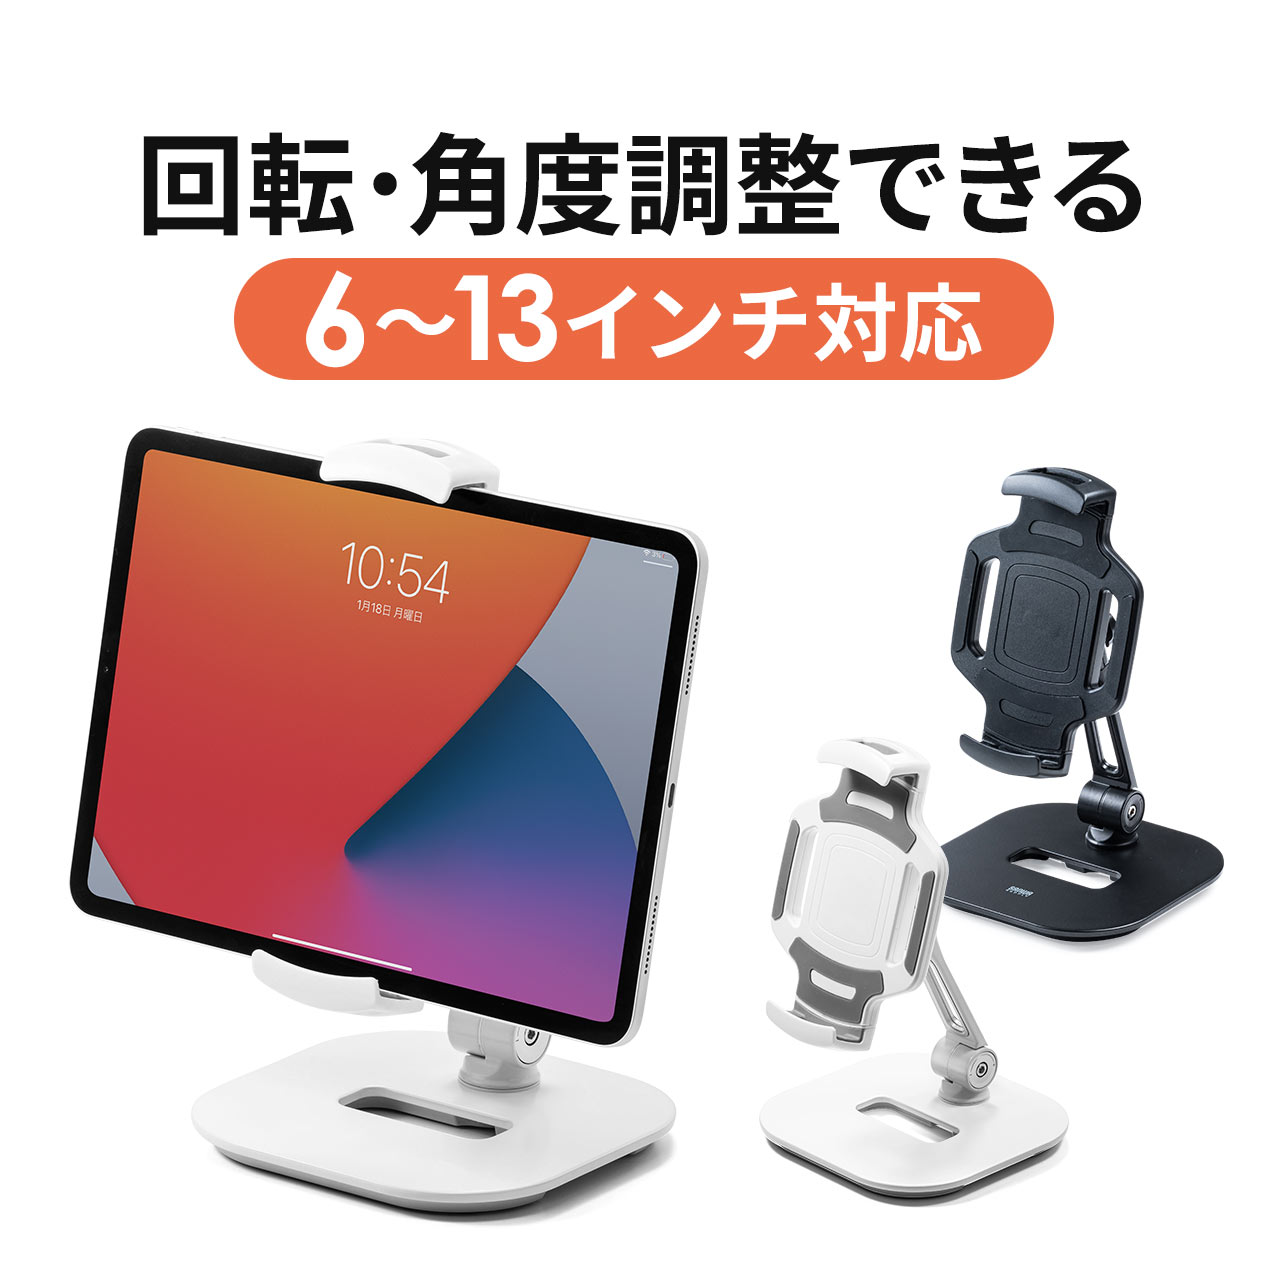 限定タイムセール 100-LATAB013W 日本未発売 サンワダイレクト限定品 送料無料 タブレットスタンド iPad 回転可能 6～13インチ対応 スタンド式 アルミ 角度調整